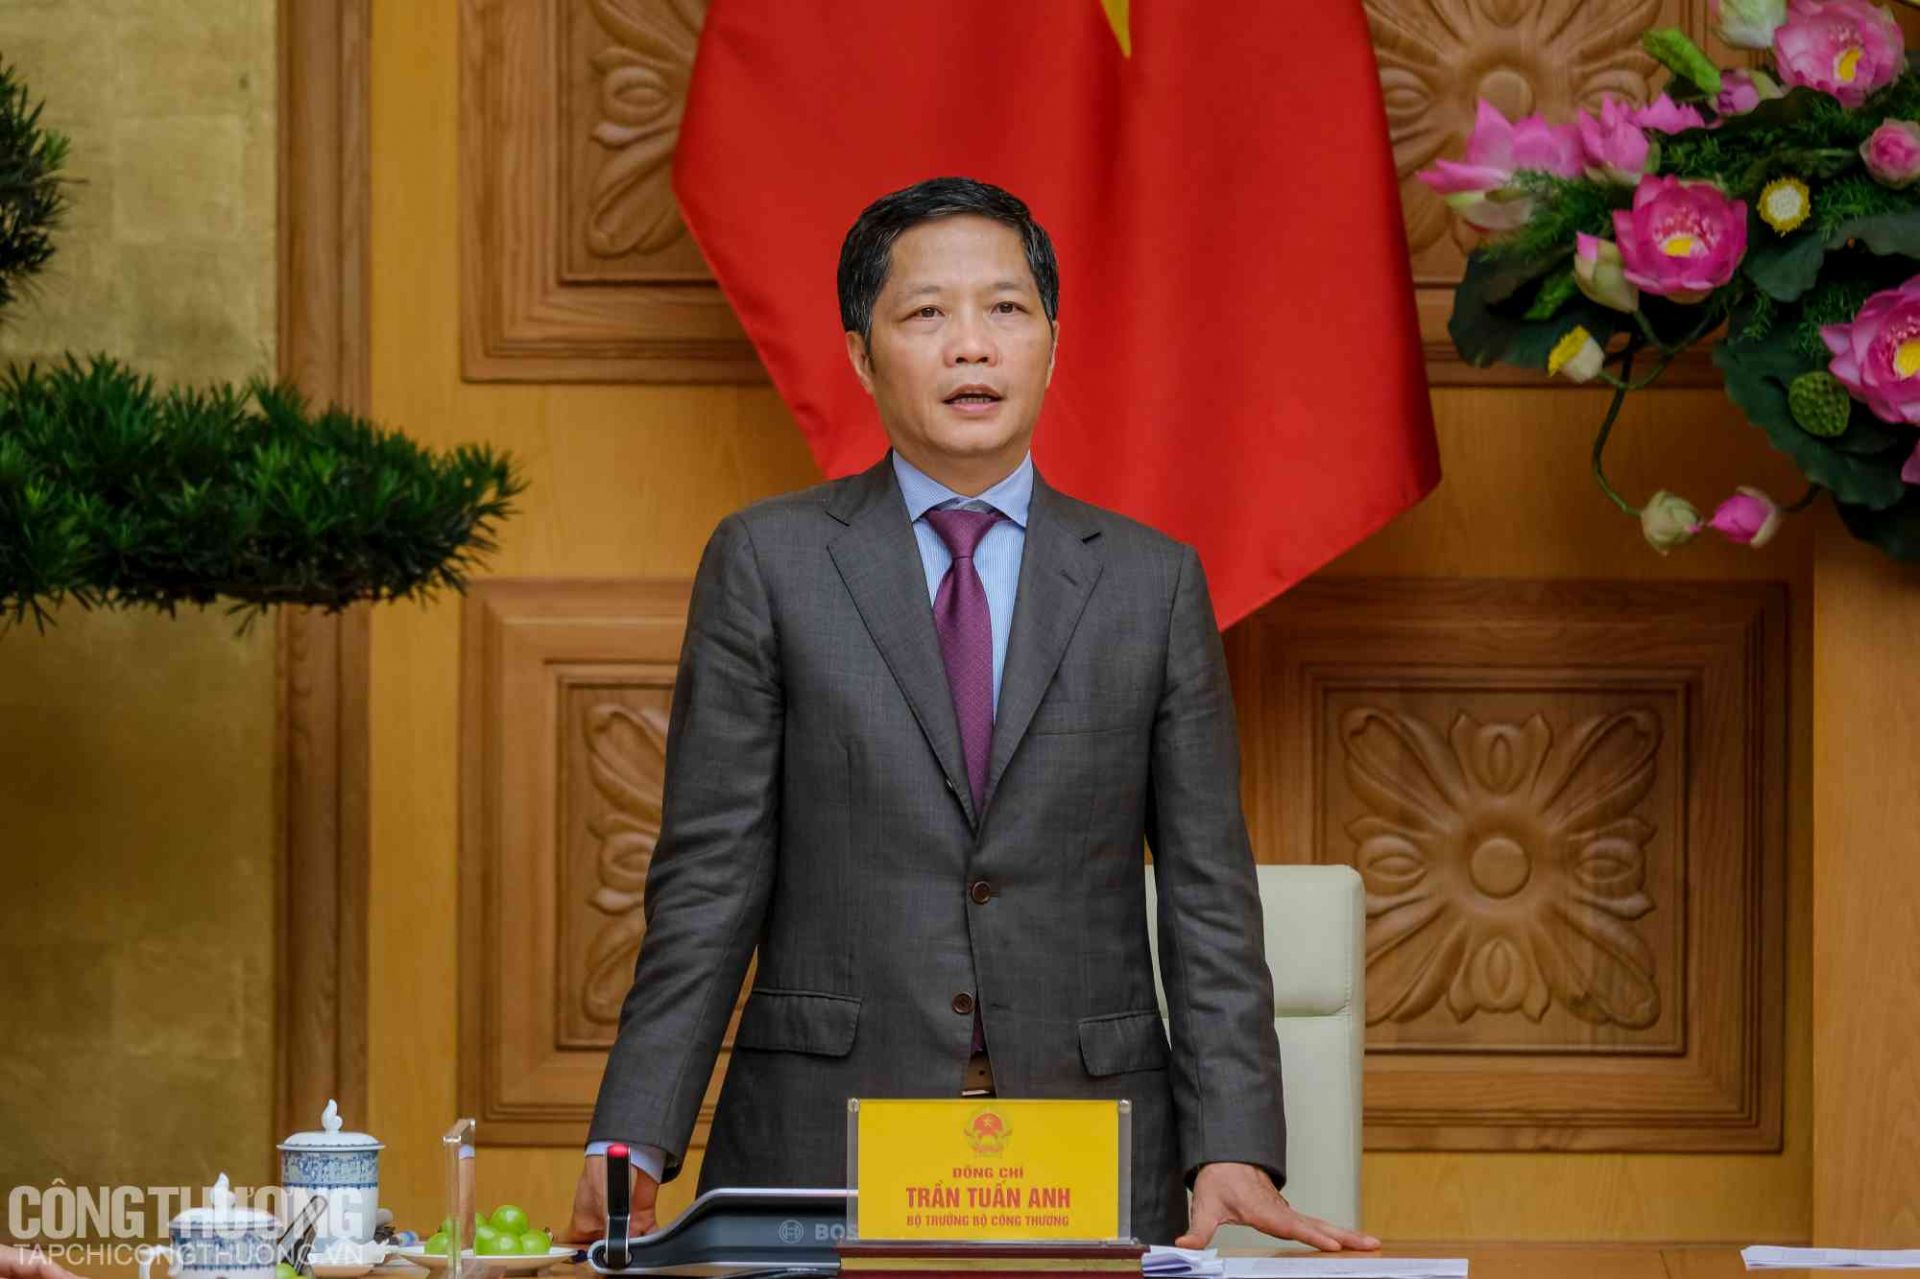 Bộ trưởng Bộ Công Thương Trần Tuấn Anh - Chủ tịch HĐQG Việt Nam 2020 báo cáo tại buổi gặp mặt